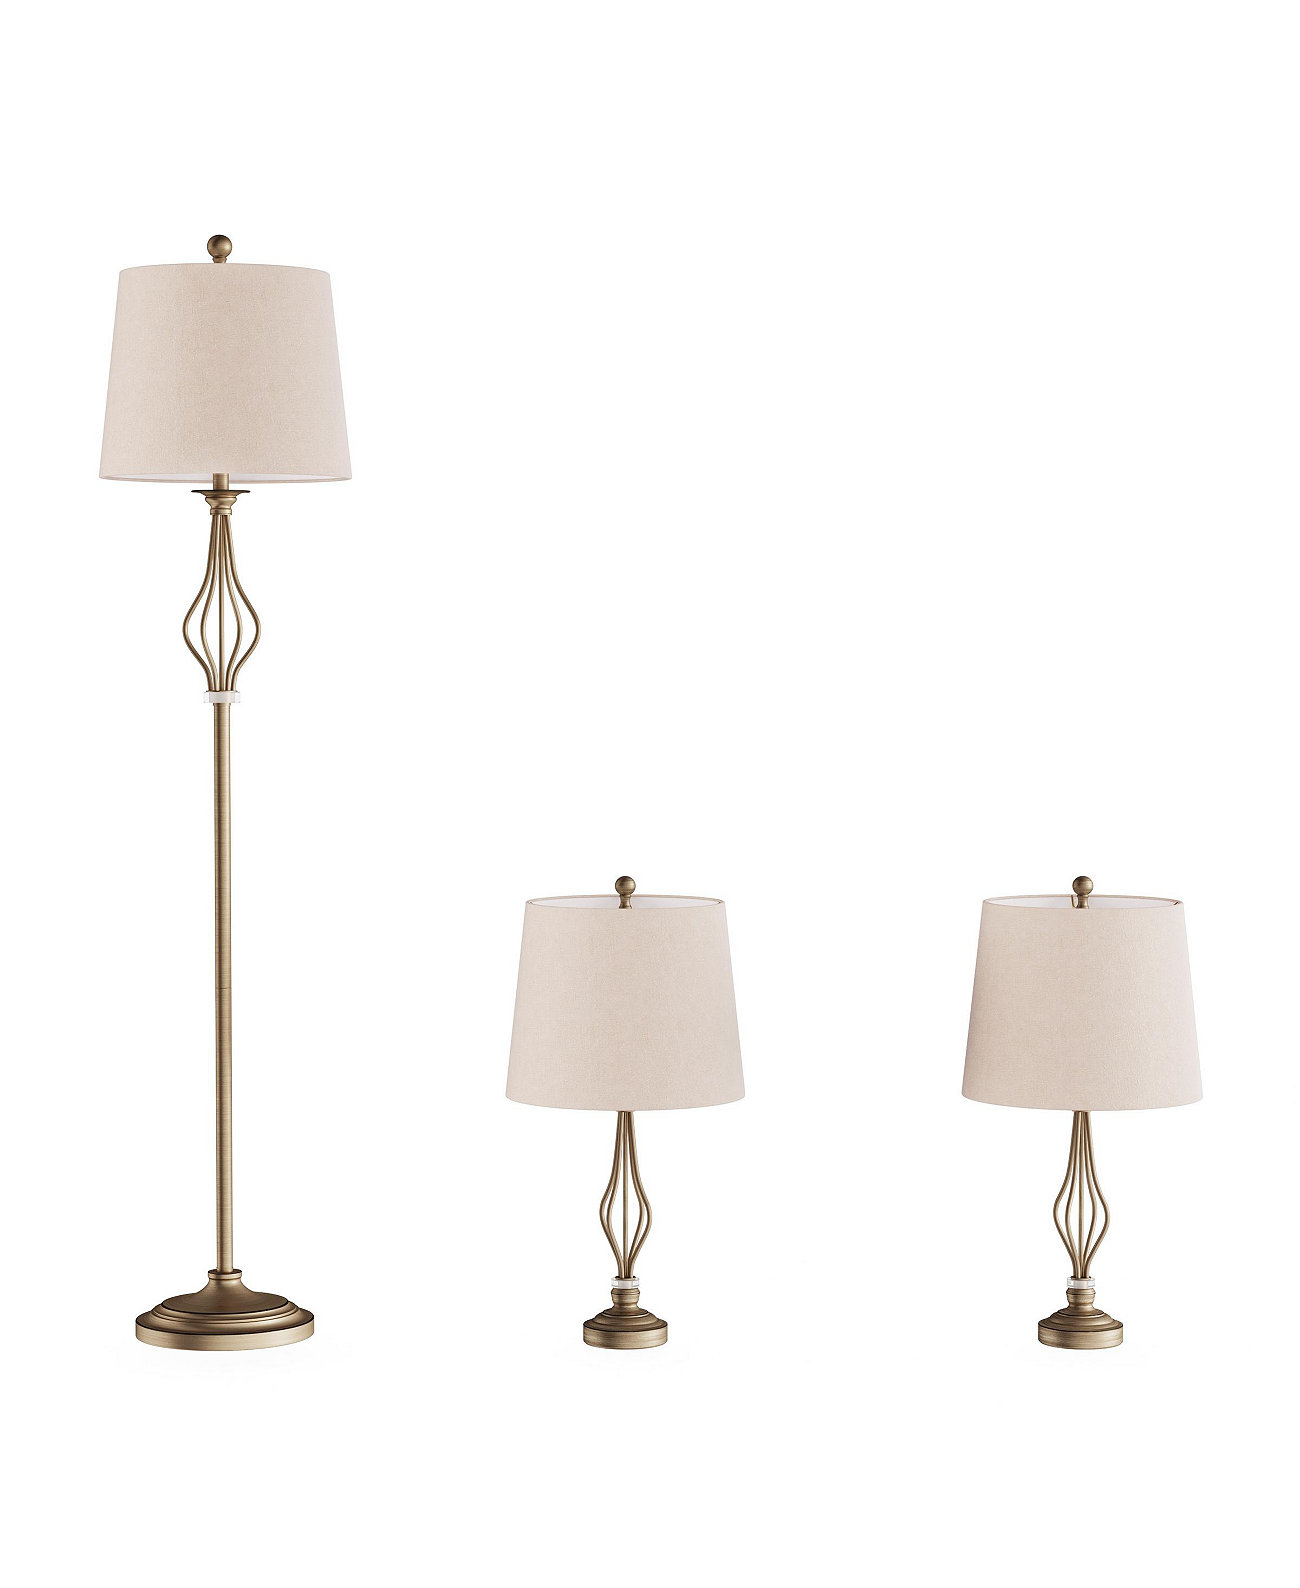 Настольные и напольные лампы - набор из 3 шт. Lavish Home